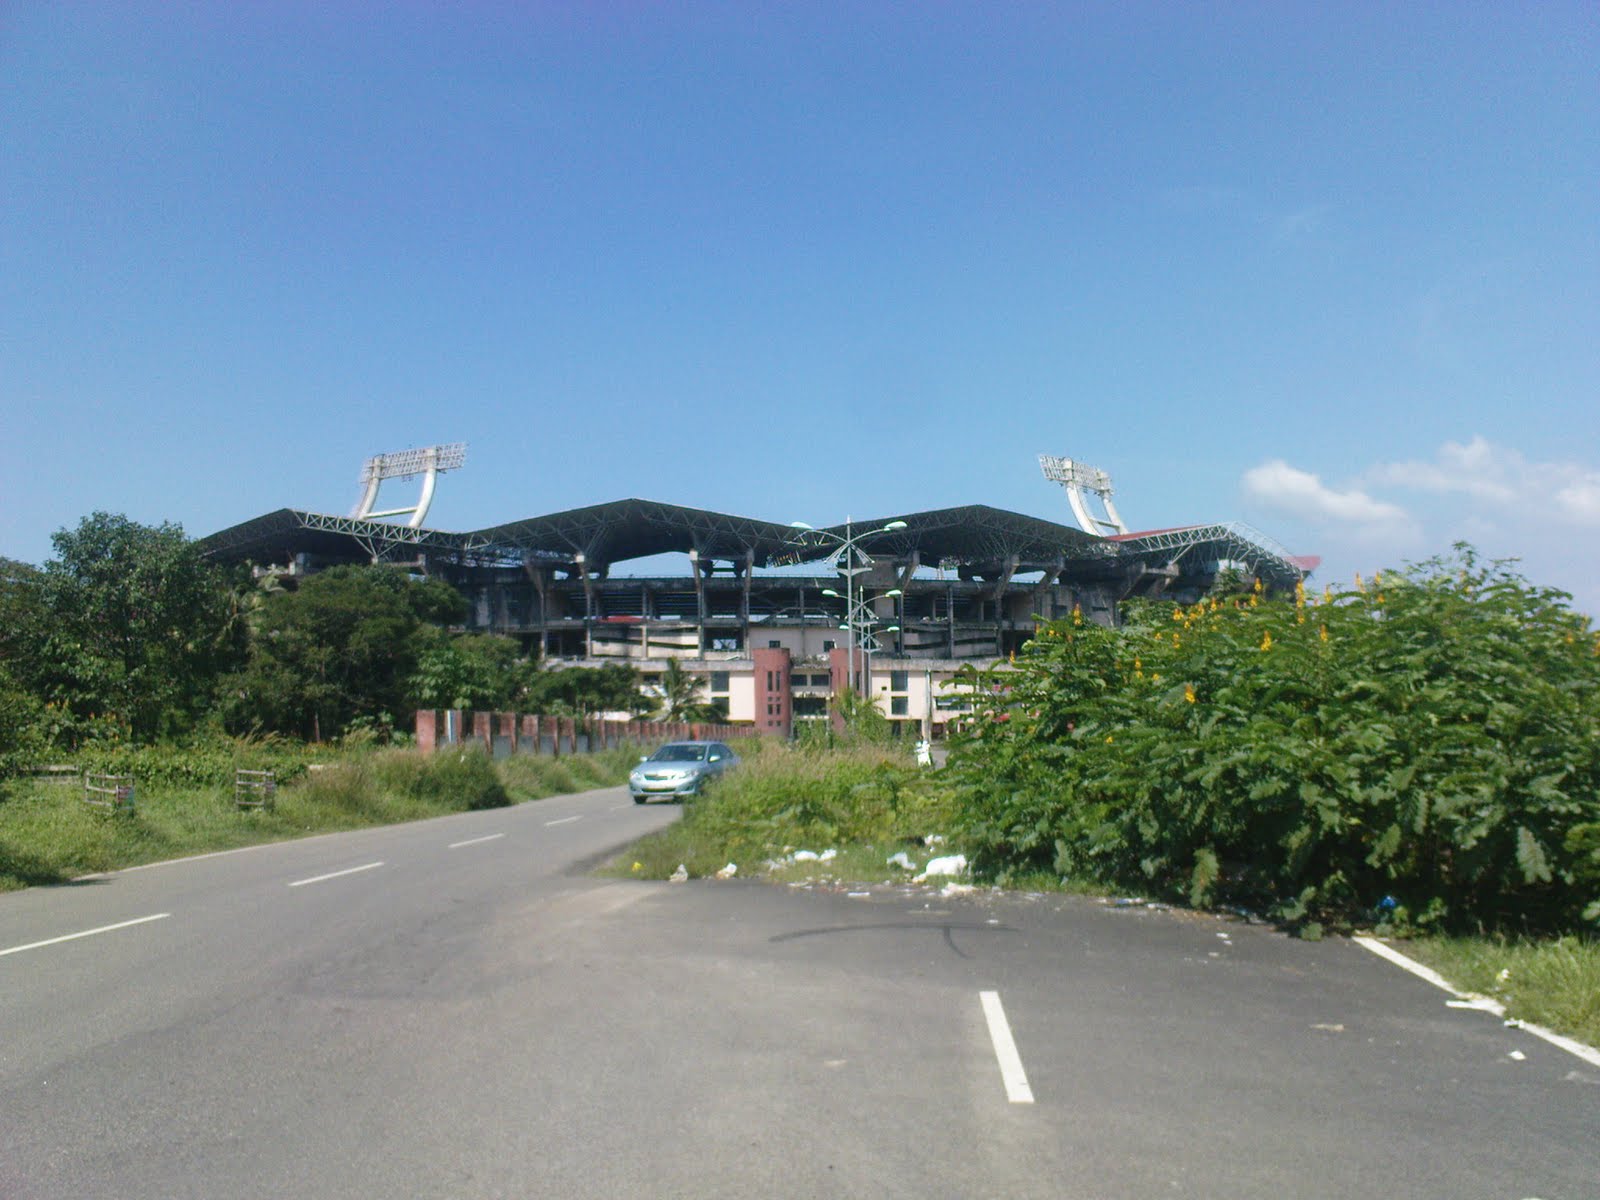 http://1.bp.blogspot.com/_Bp69bfSPHRc/SwJptSs3cvI/AAAAAAAAApc/-cptbmtX3Ag/s1600/Kochi-Stadium-approach3.jpg